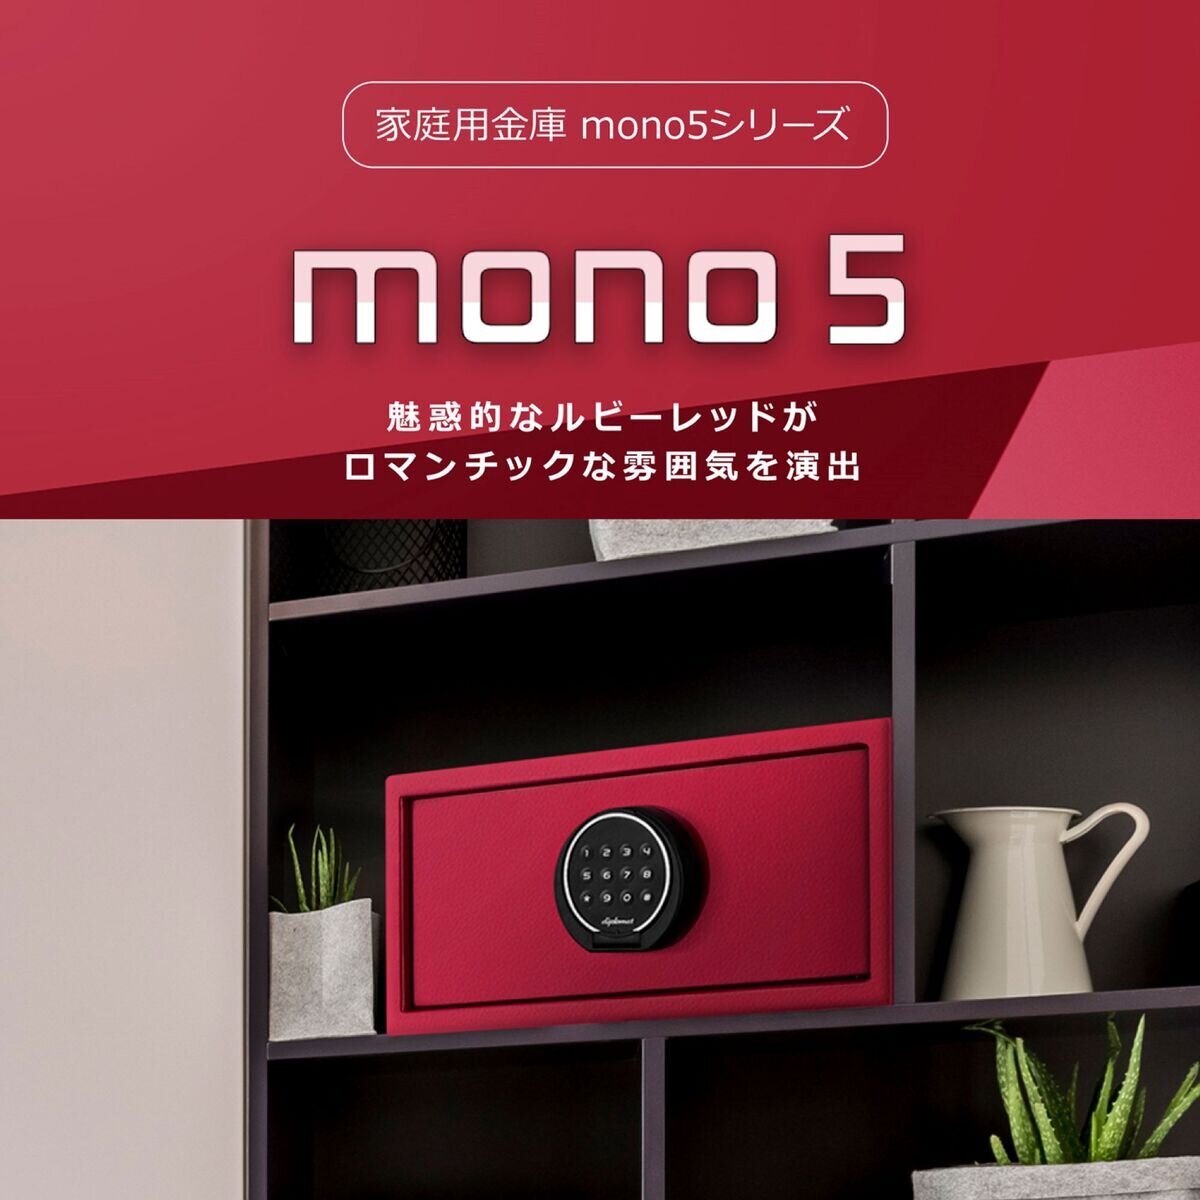 ディプロマット mono5 セキュリティセーフ 18L ルビーレッド mono5 RR Costco Japan